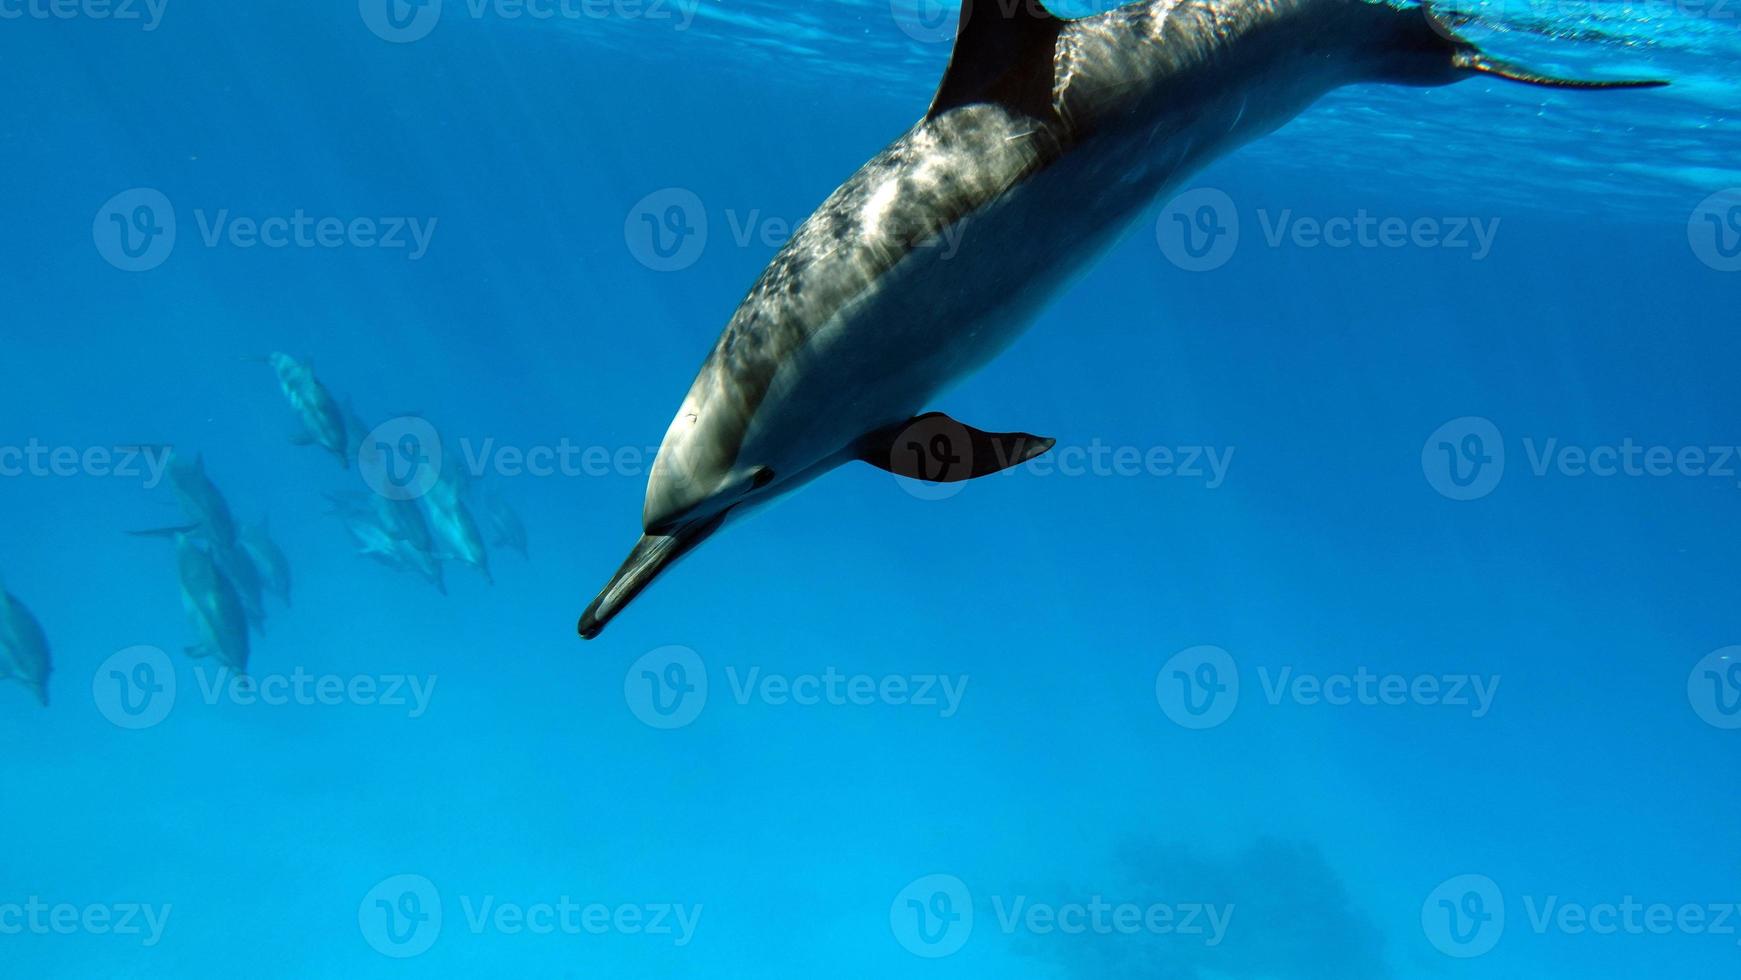 golfinhos. golfinho-rotador. stenella longirostris é um pequeno golfinho que vive em águas costeiras tropicais ao redor do mundo. foto